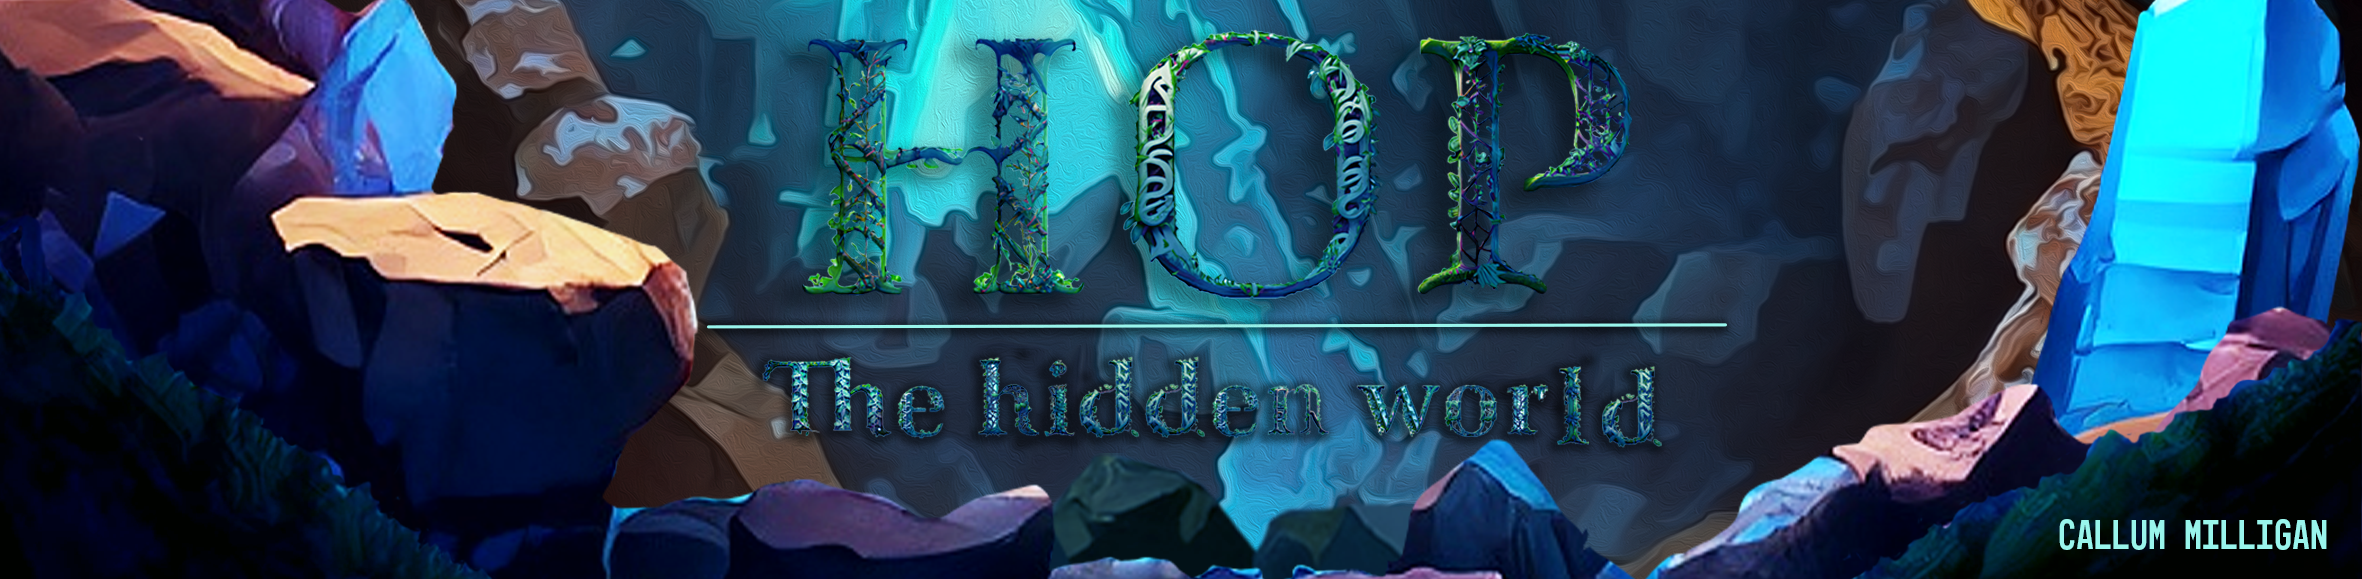 Hop: The hidden world